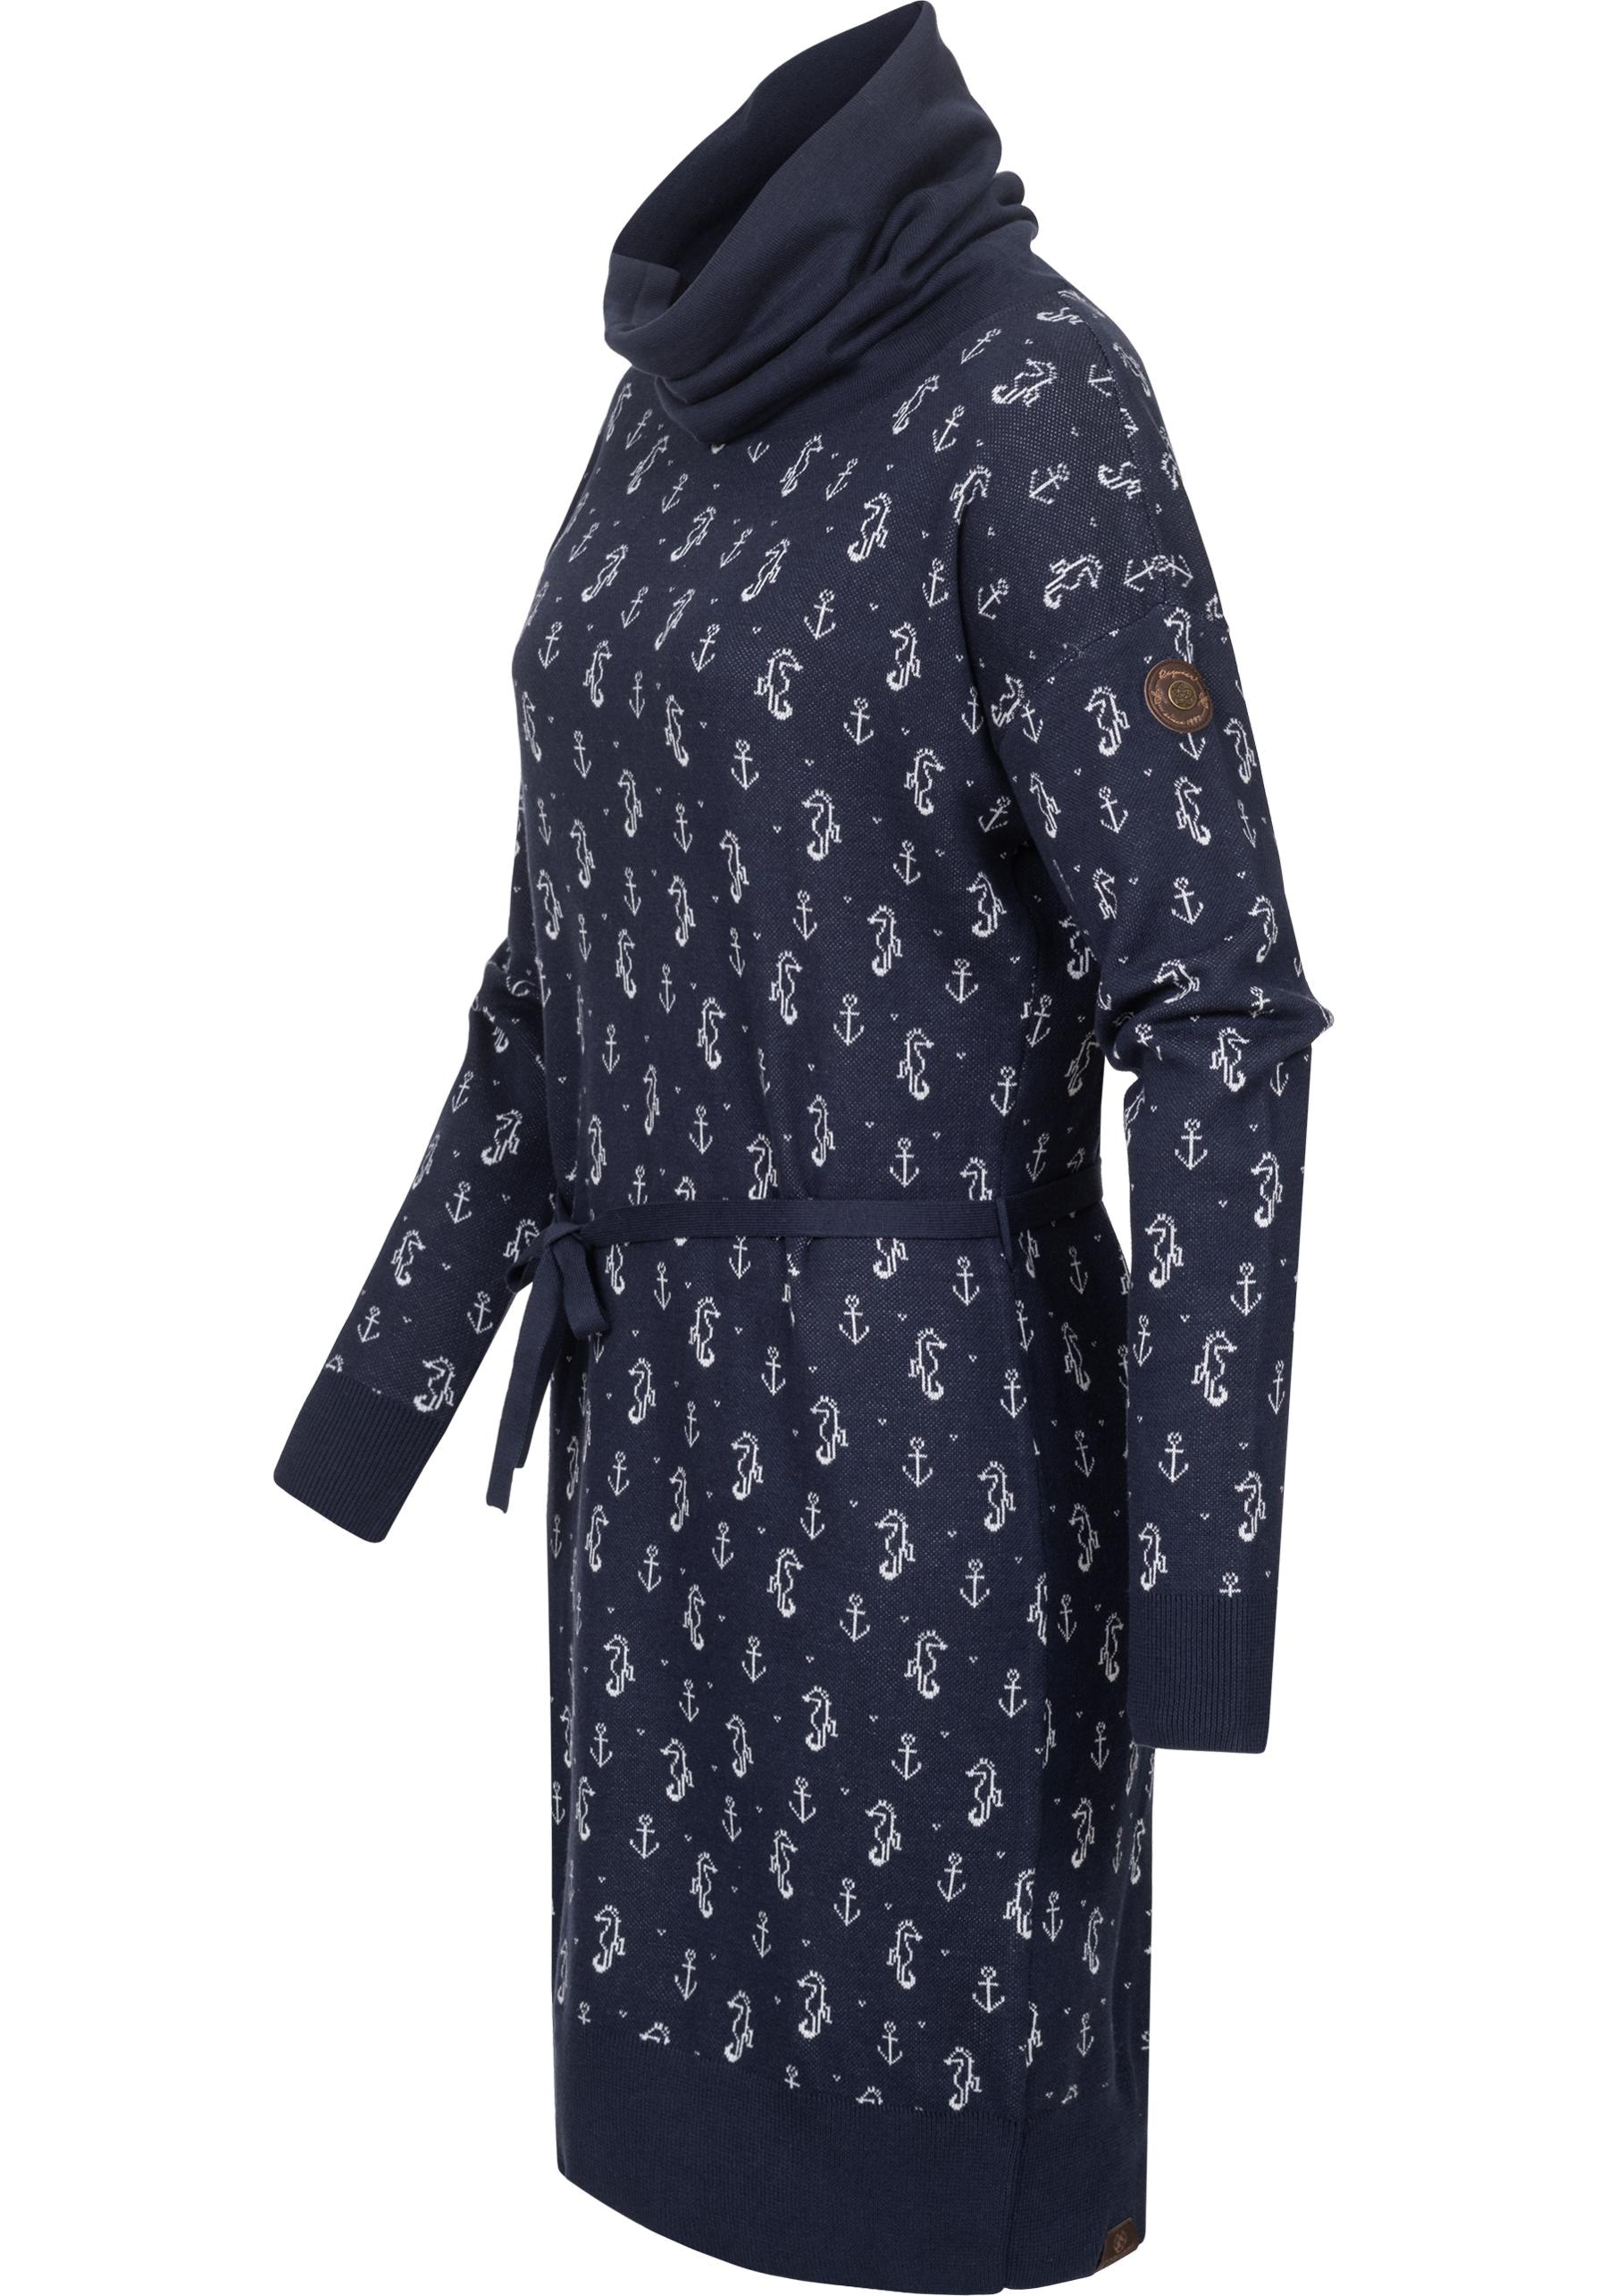 Ragwear Sweatkleid »Babett Dress Marina«, verspieltes Winterkleid mit Rollkragen und Muster